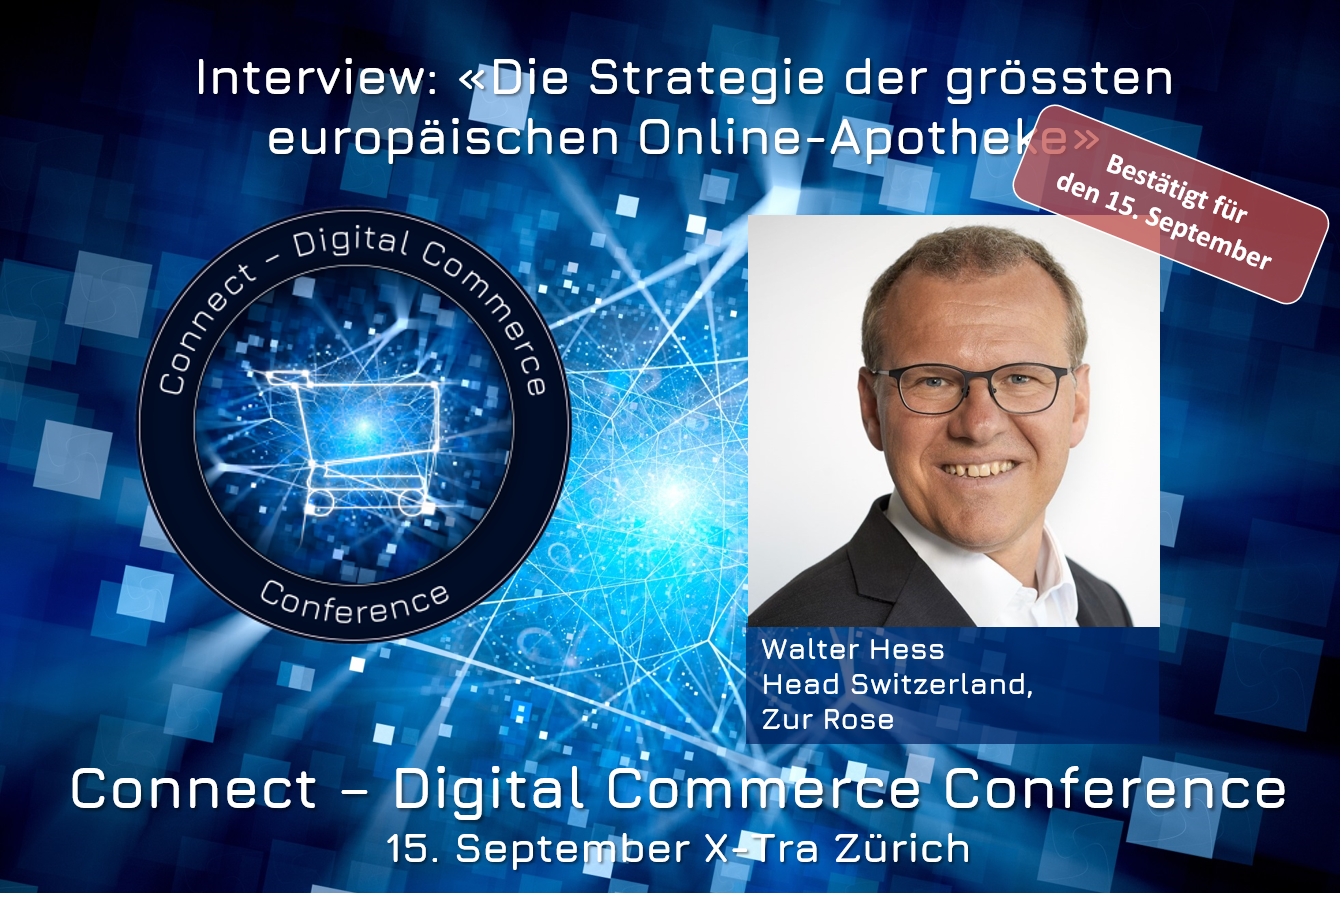 Walter Hess, Head Switzerland Zur Rose an der Connect - Digital Commerce Conference am 15. September 2020 im X-Tra in Zürich